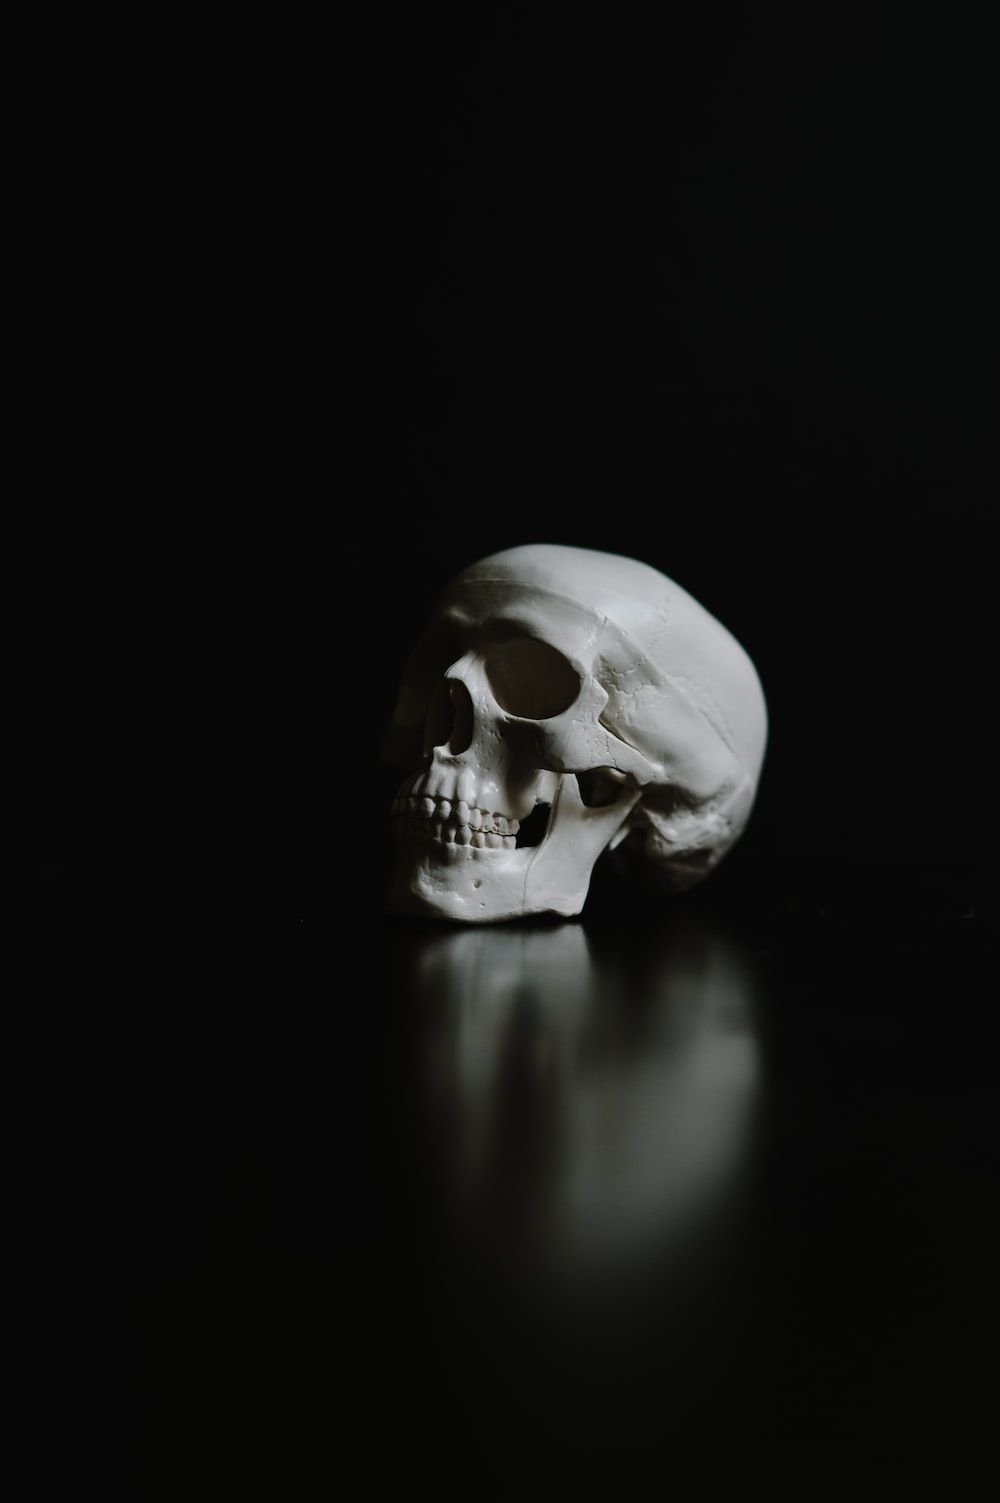  Totenkopf Hintergrundbild 1000x1503. Foto zum Thema Ein weißer menschlicher schädel auf schwarzem hintergrund